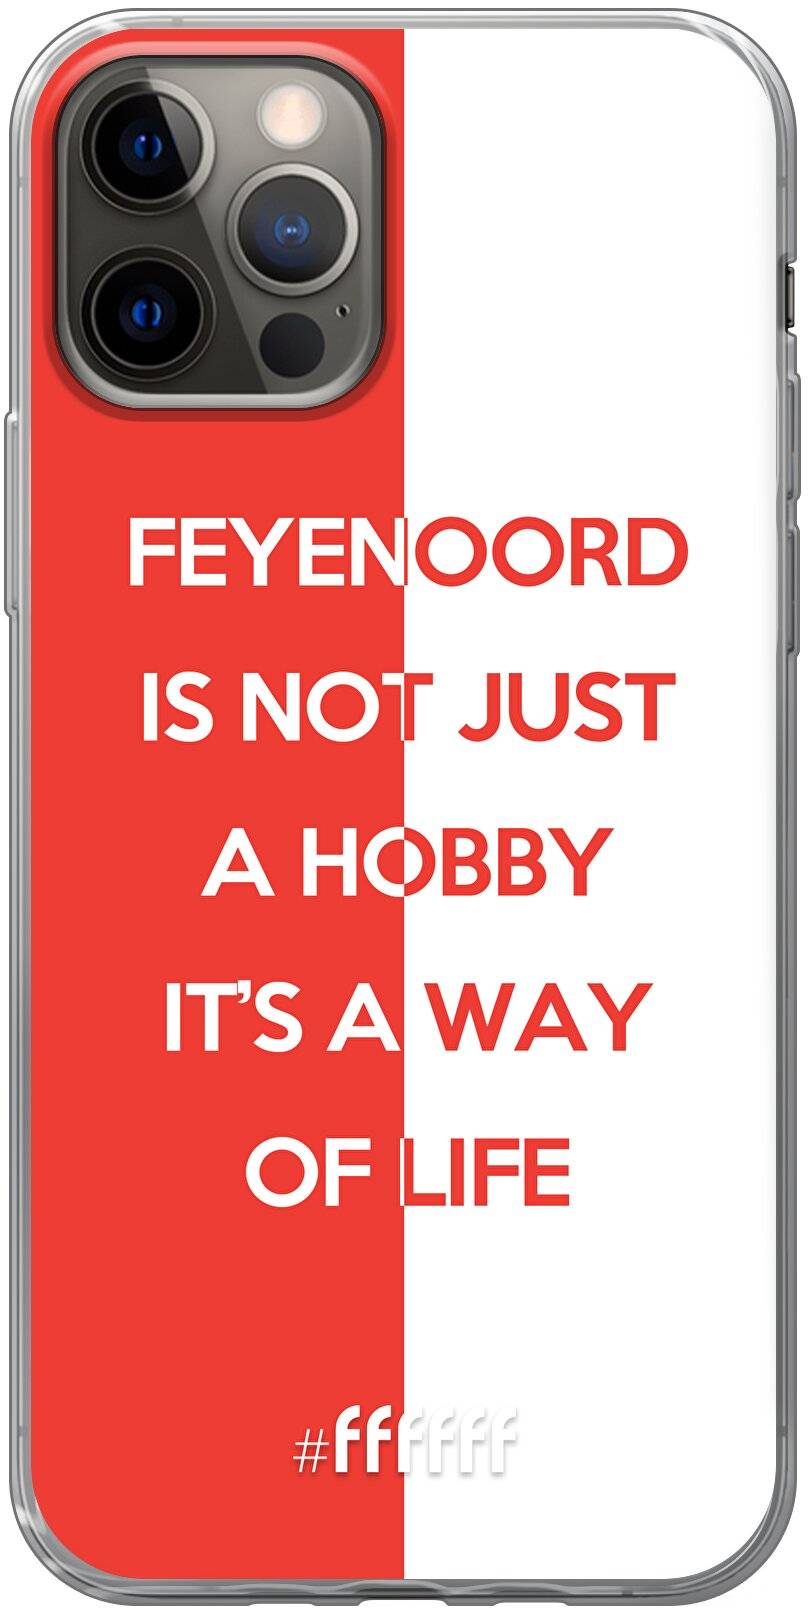 Feyenoord - Way of life iPhone 12